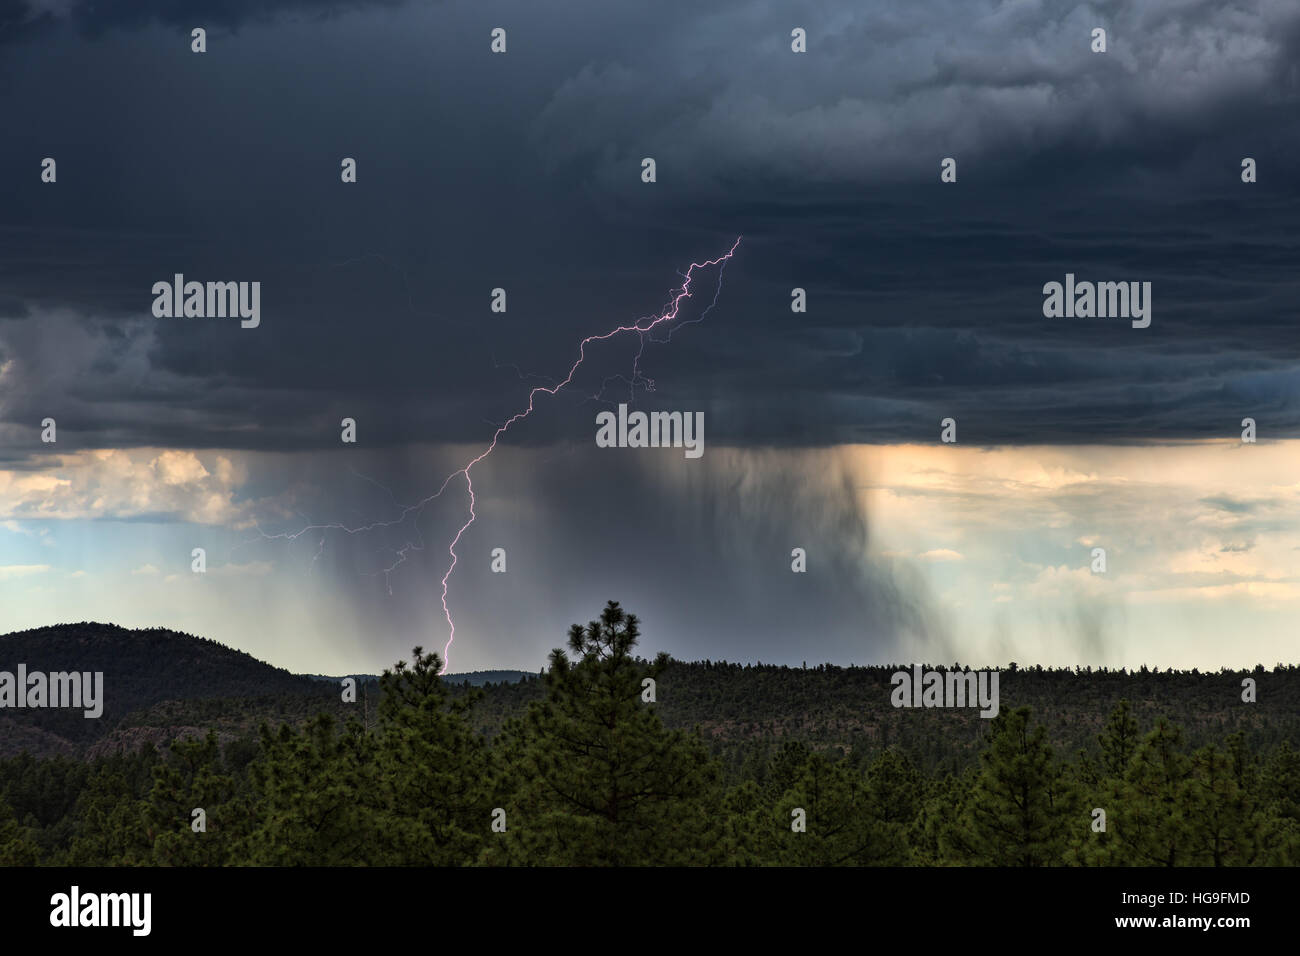 Summer thunderstorm with lightning and heavy rain near Payson, Arizona Stock Photo